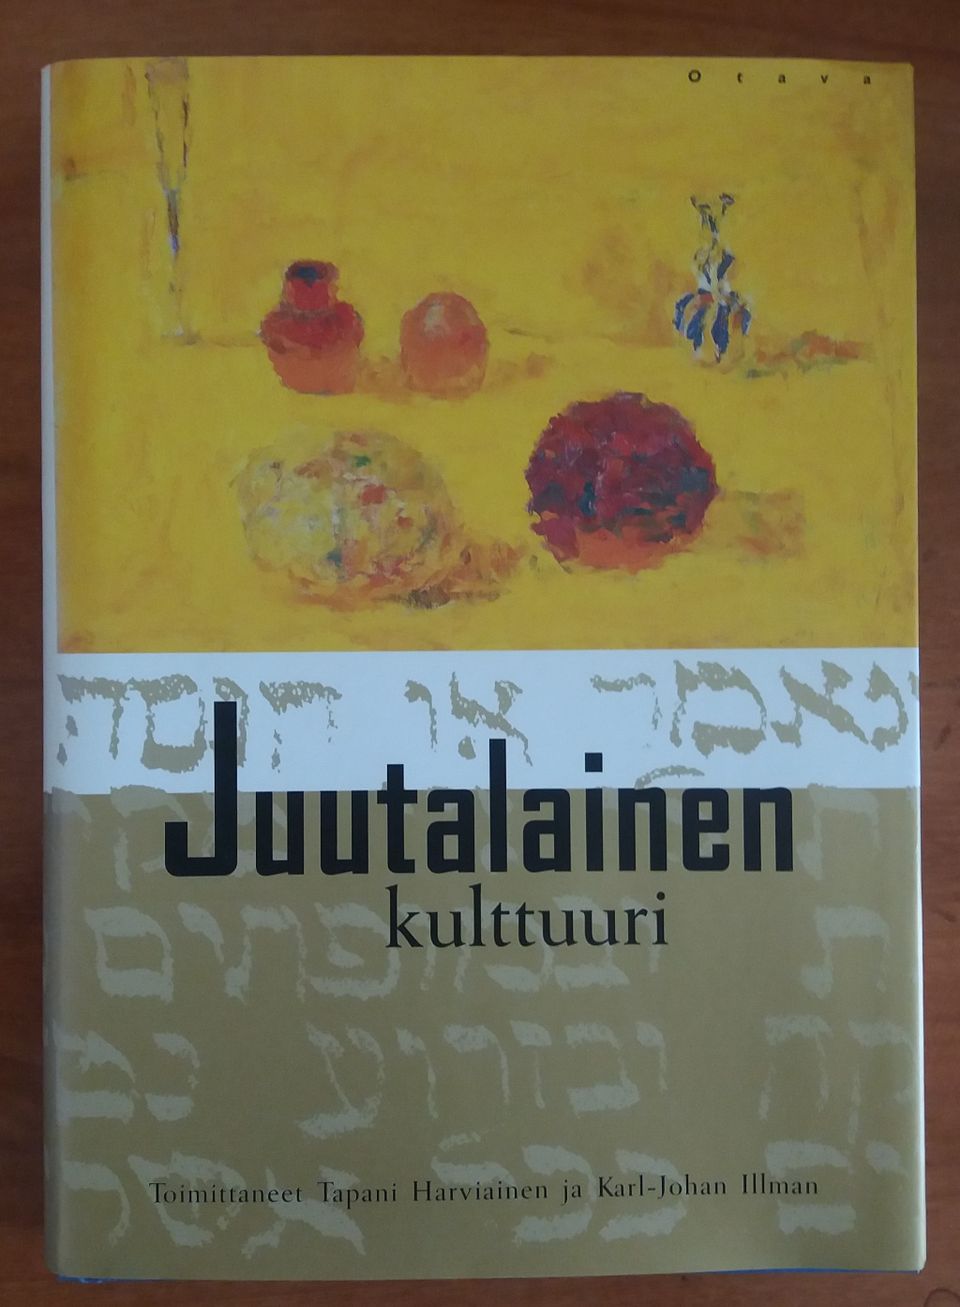 Harviainen Tapani, Illman Karl-Johan toim. JUUTALAINEN KULTTUURI Otava 2p 2001